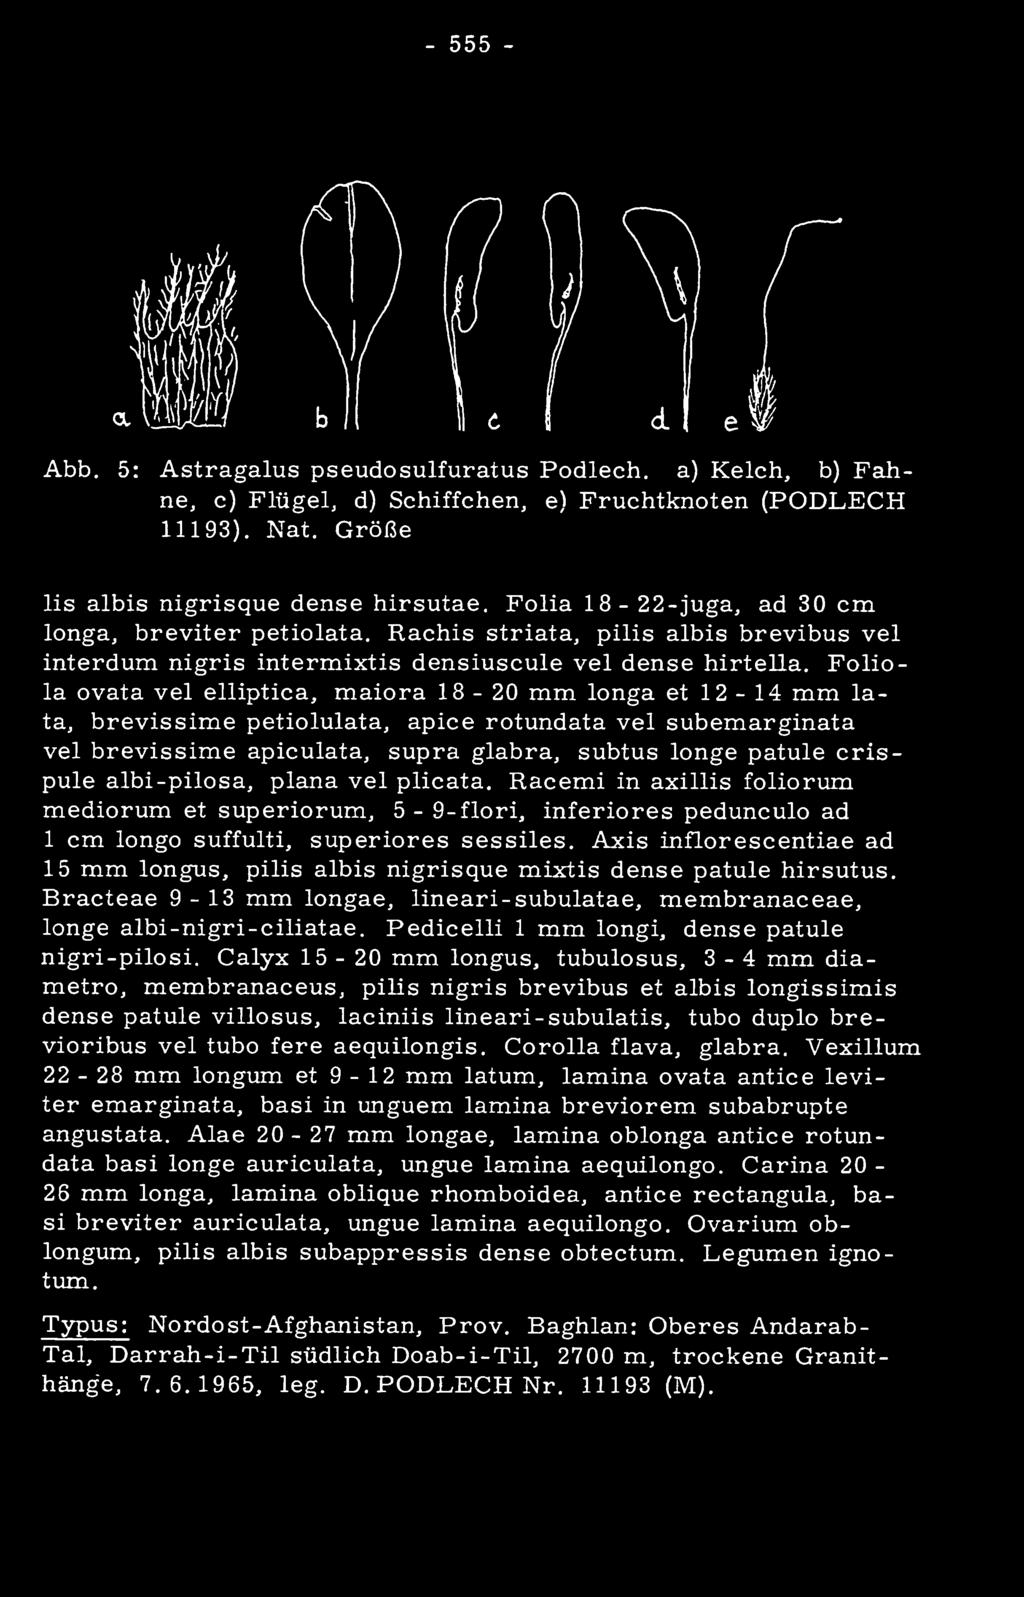 Axis inflorescentiae ad 15 mm longus, pilis albis nigrisque mixtis dense patule hirsutus. Bracteae 9-13 mm longae, lineari-subulatae, membranaceae, longe albi-nigri-ciliatae.